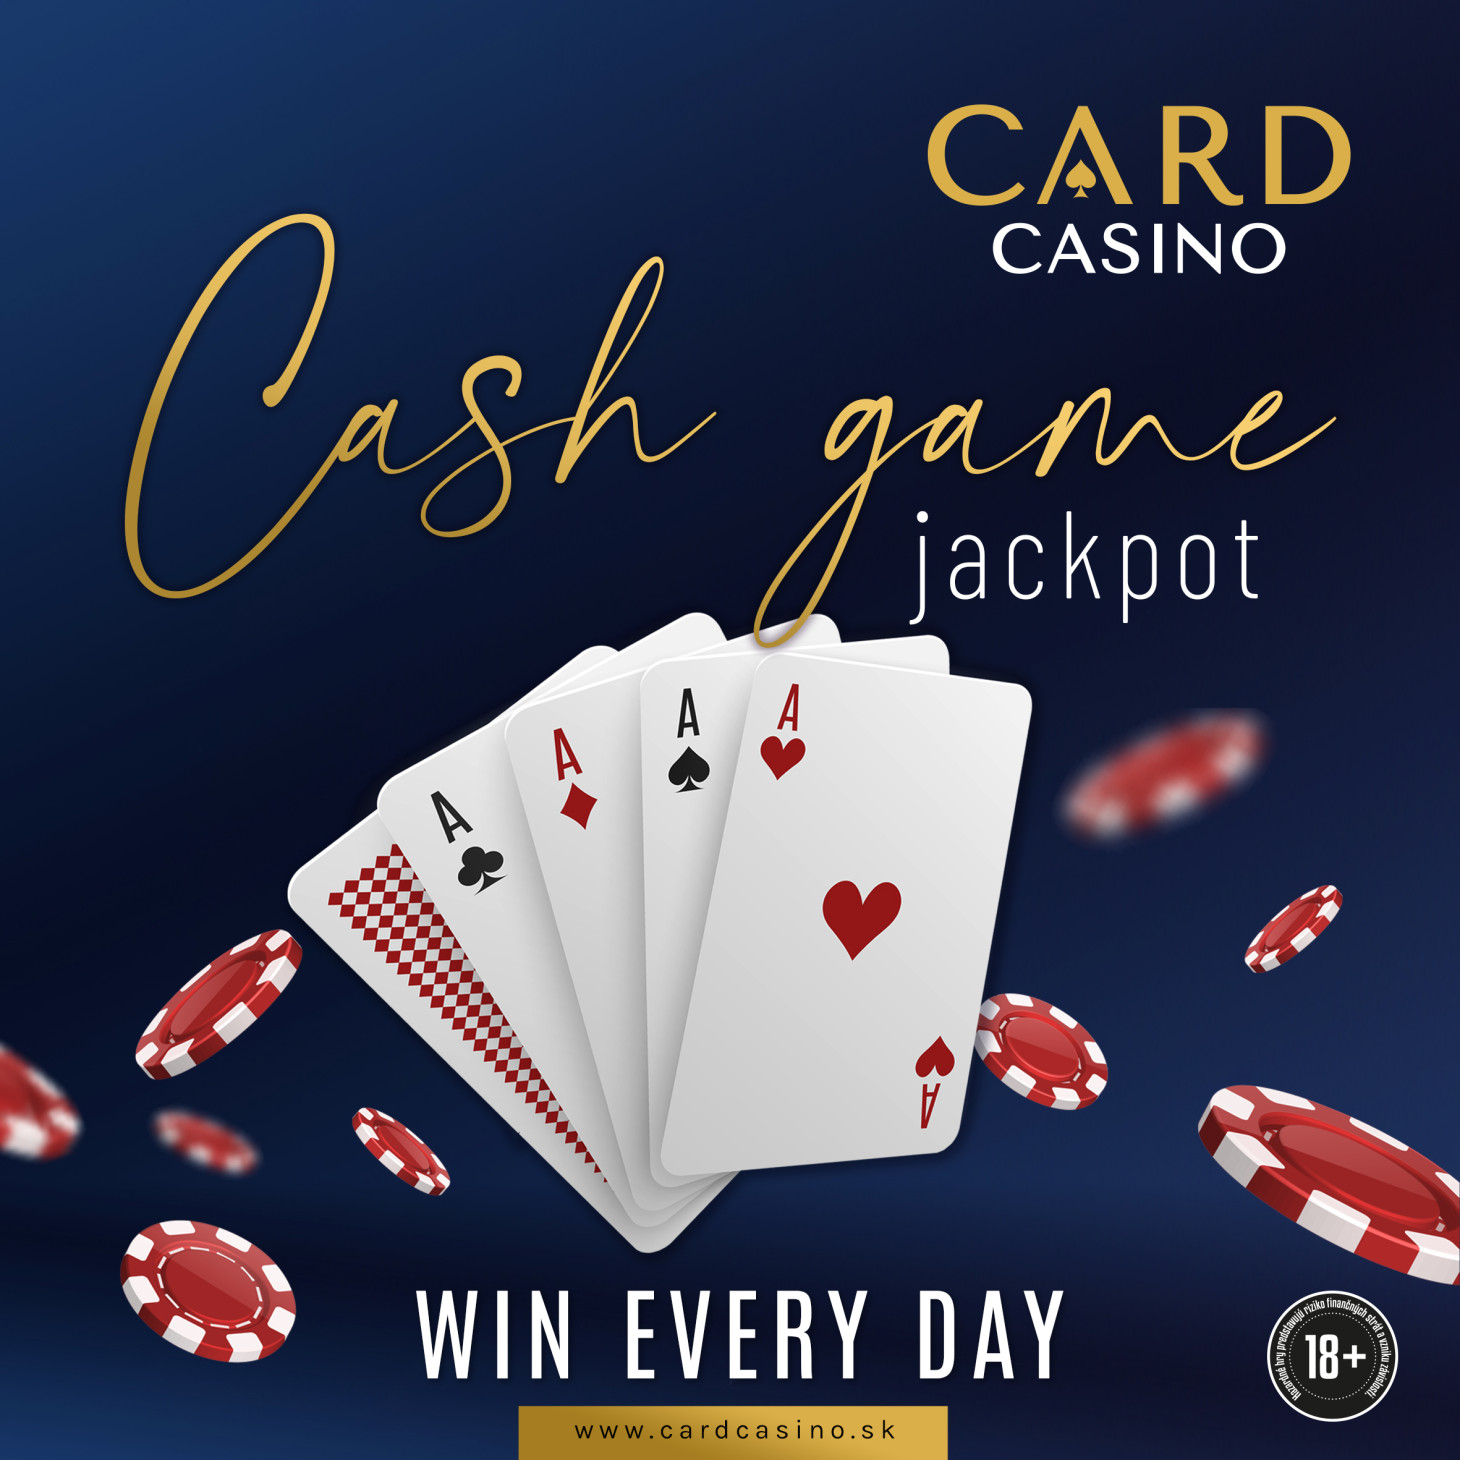 Kommen Sie zu Cash at Card, wo großzügige Jackpots auf Sie warten